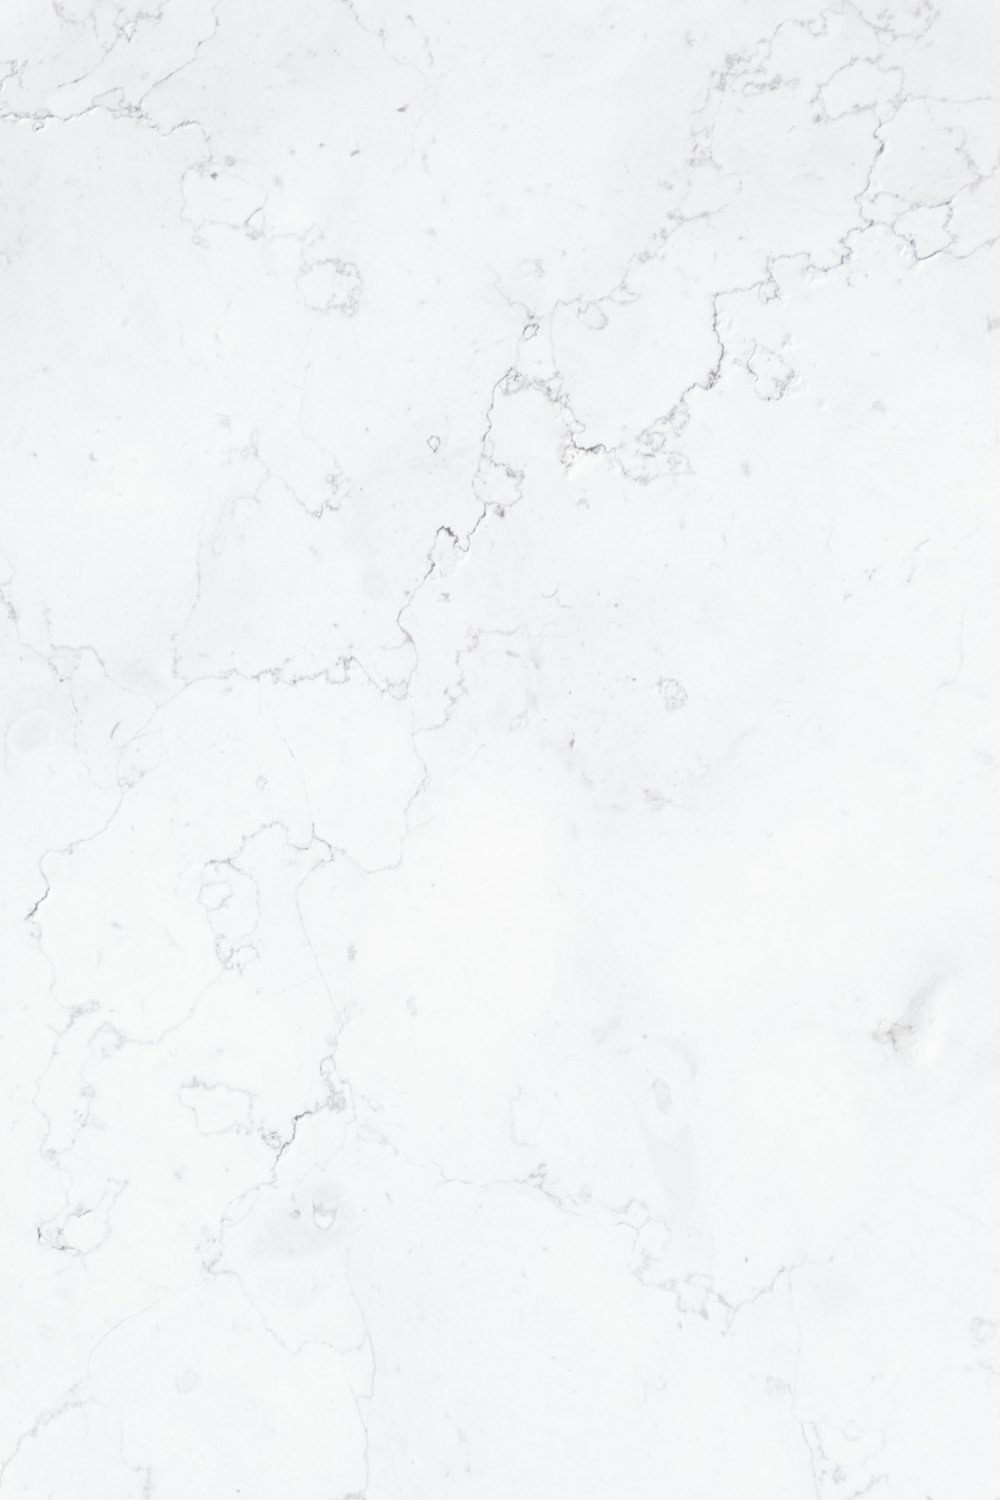 Bộ sưu tập 100 mẫu White background marble Những mẫu giúp tạo cảm giác sang trọng